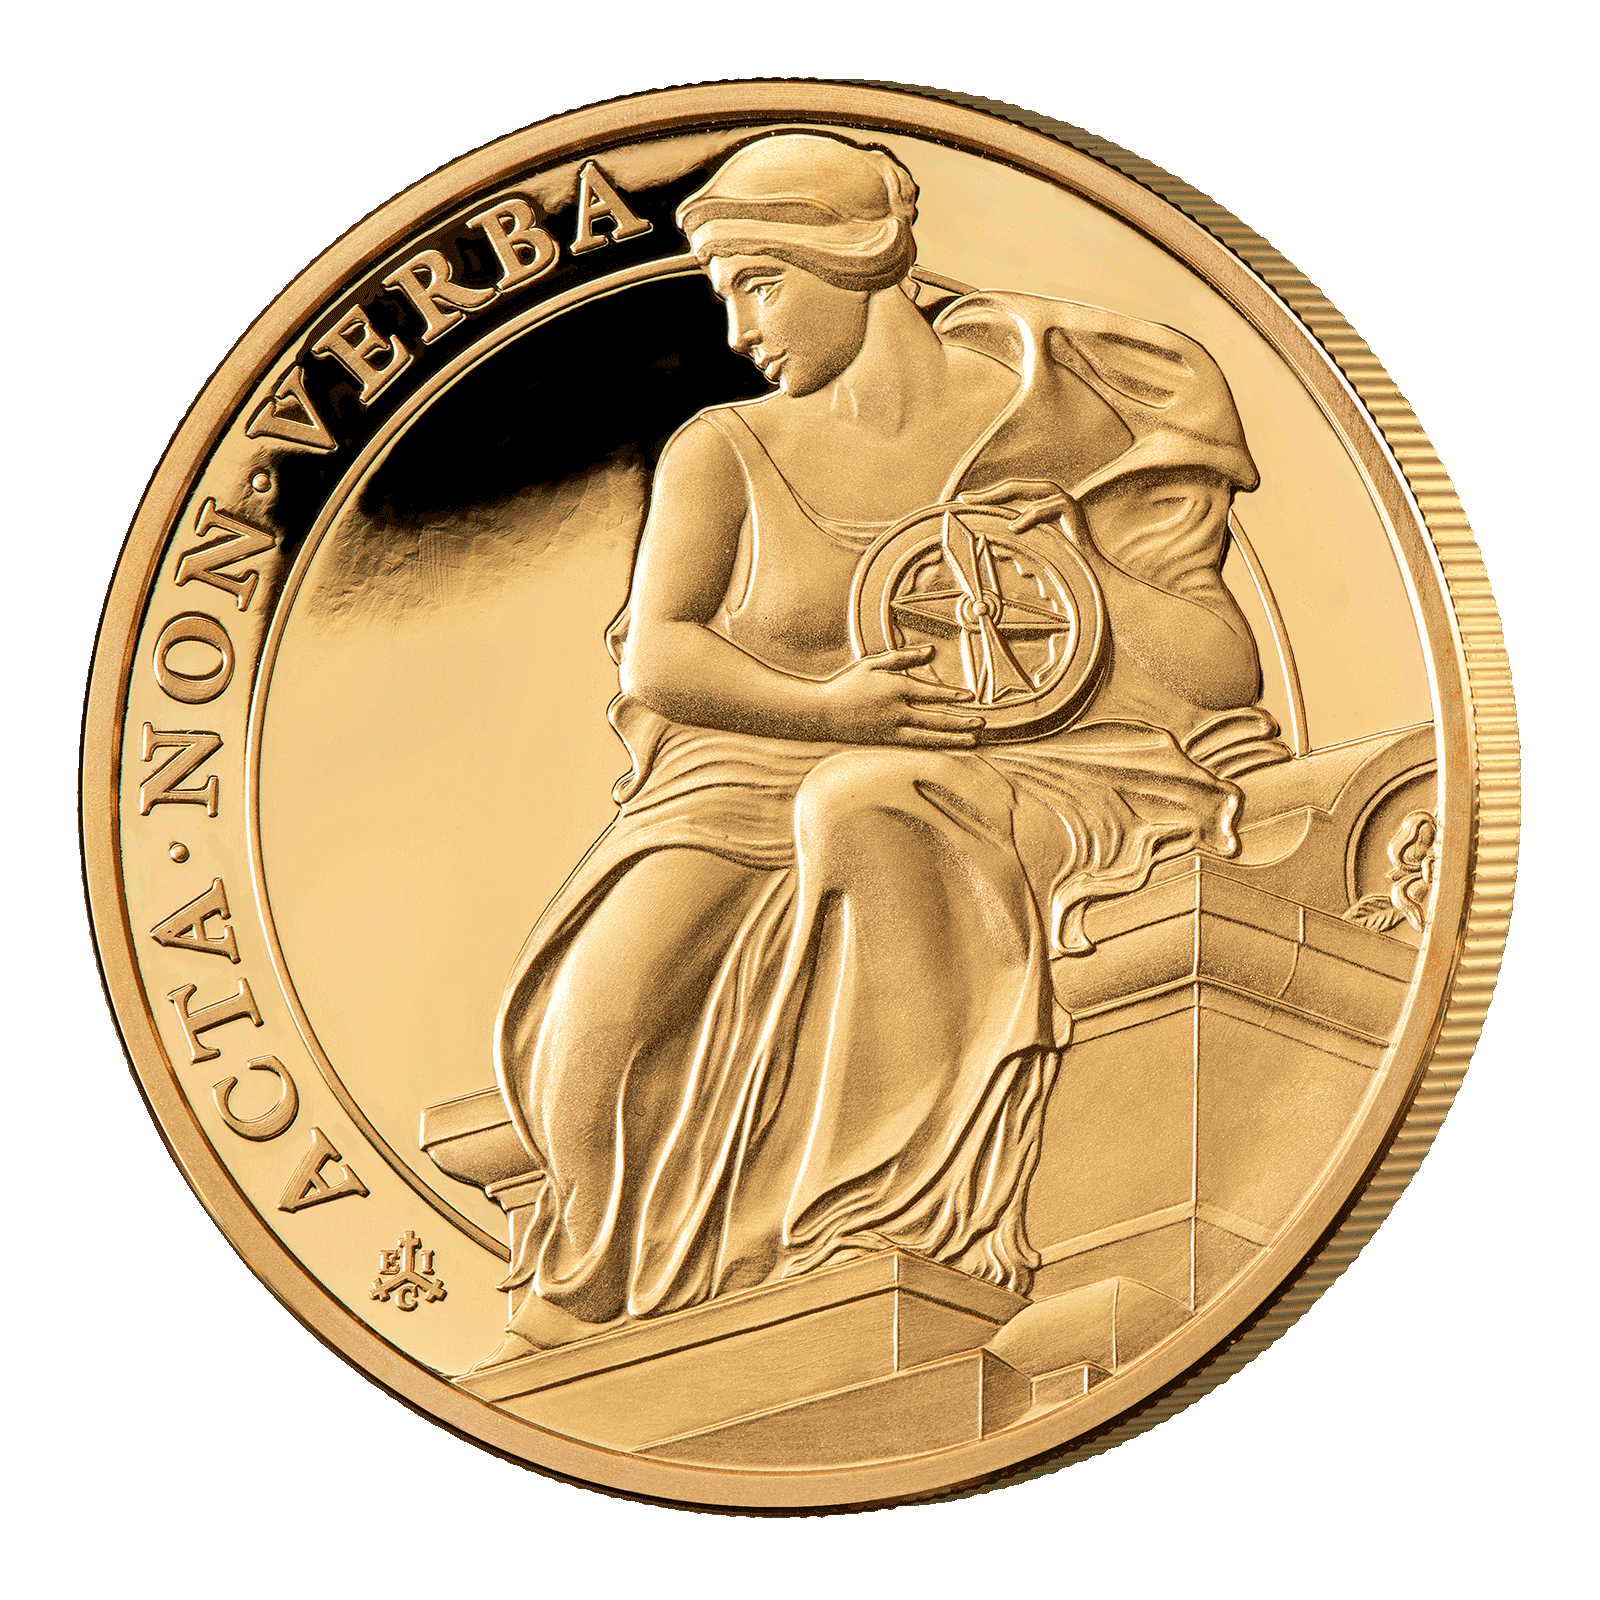 Bạn muốn xem hình ảnh liên quan đến danh dự nữ hoàng và đồng xu vàng? Hãy xem Quý Tộc Nữ Hoàng và Đức Tính Kiên Định, một đồng xu vàng đáng giá với thông điệp tích cực và sống động.